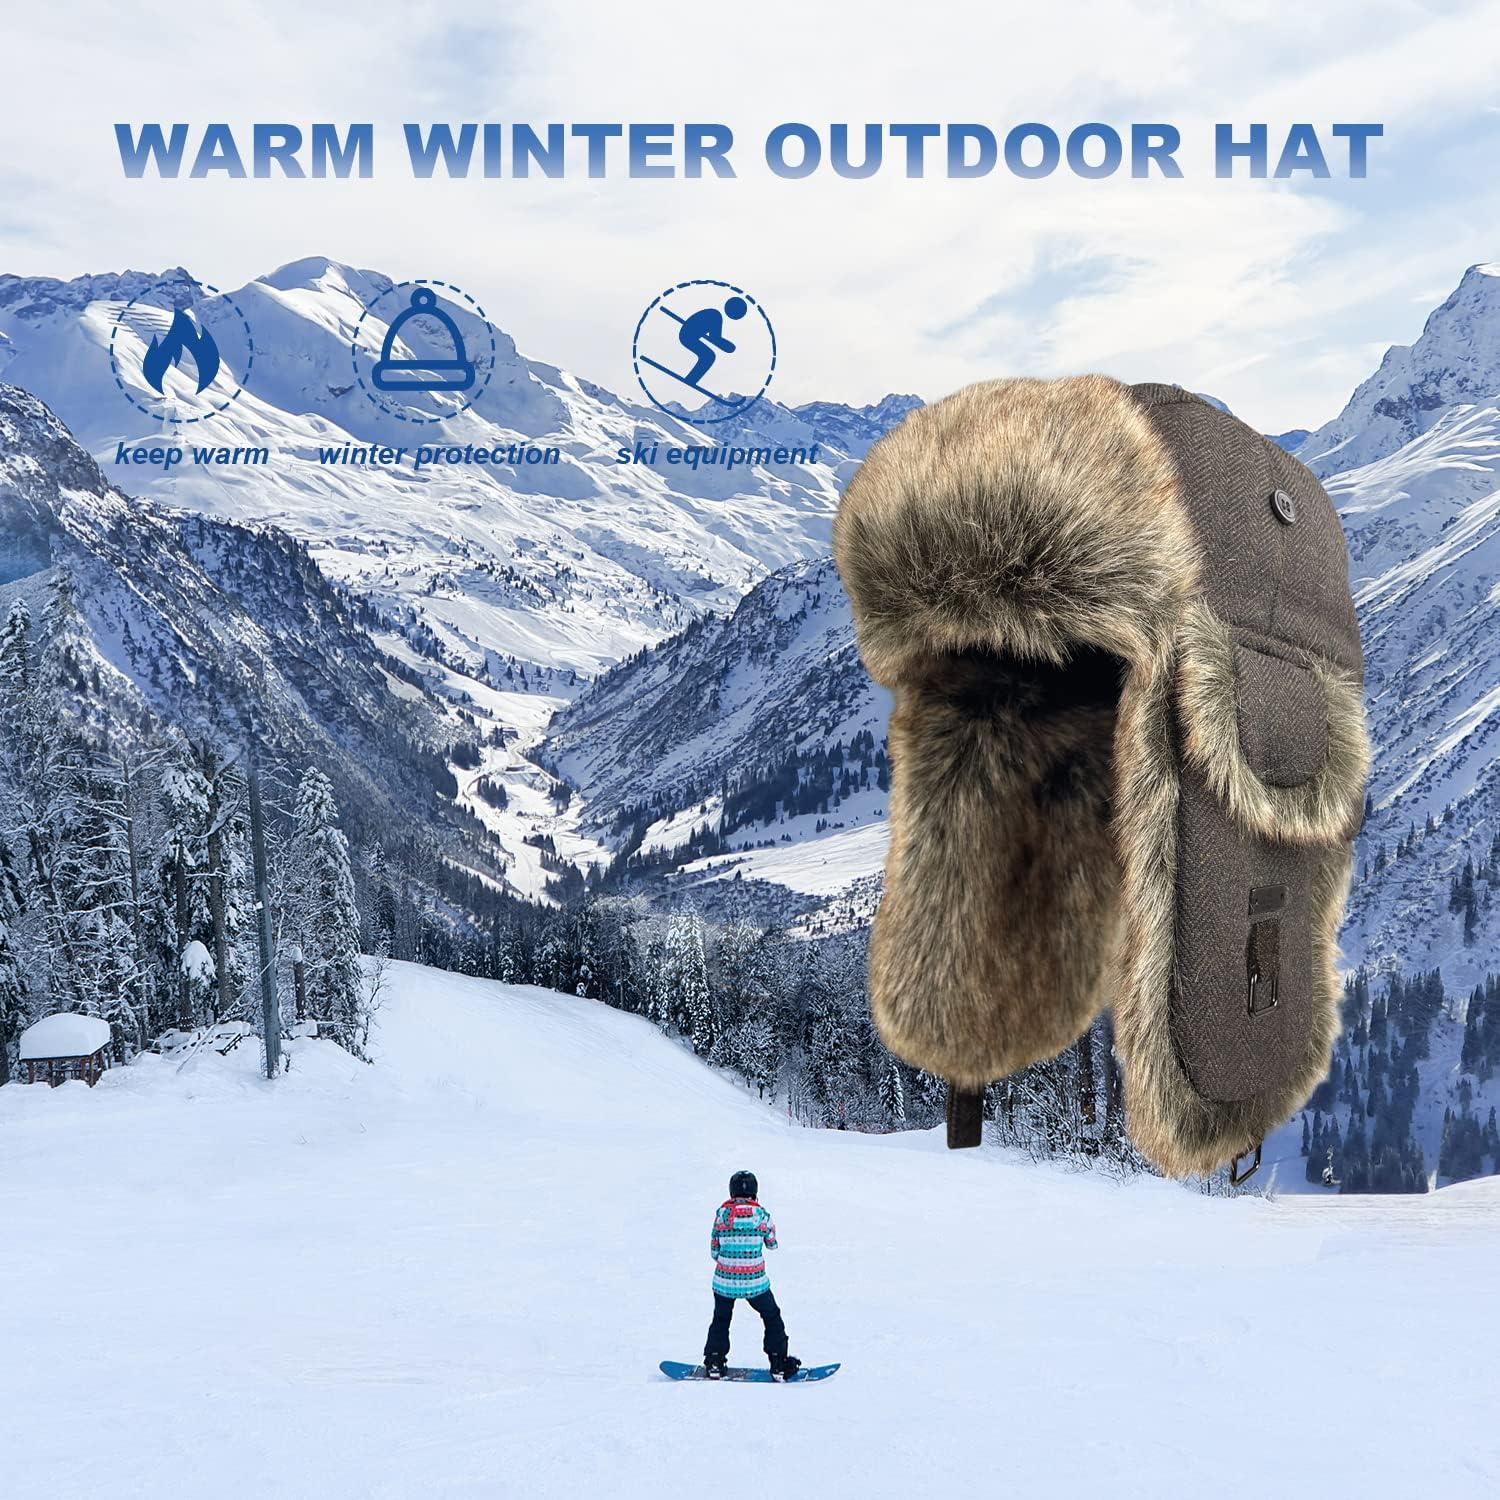 Kurhatic Winter Trapper Hat,Warm Faux Fur Aviator Hat,Russian